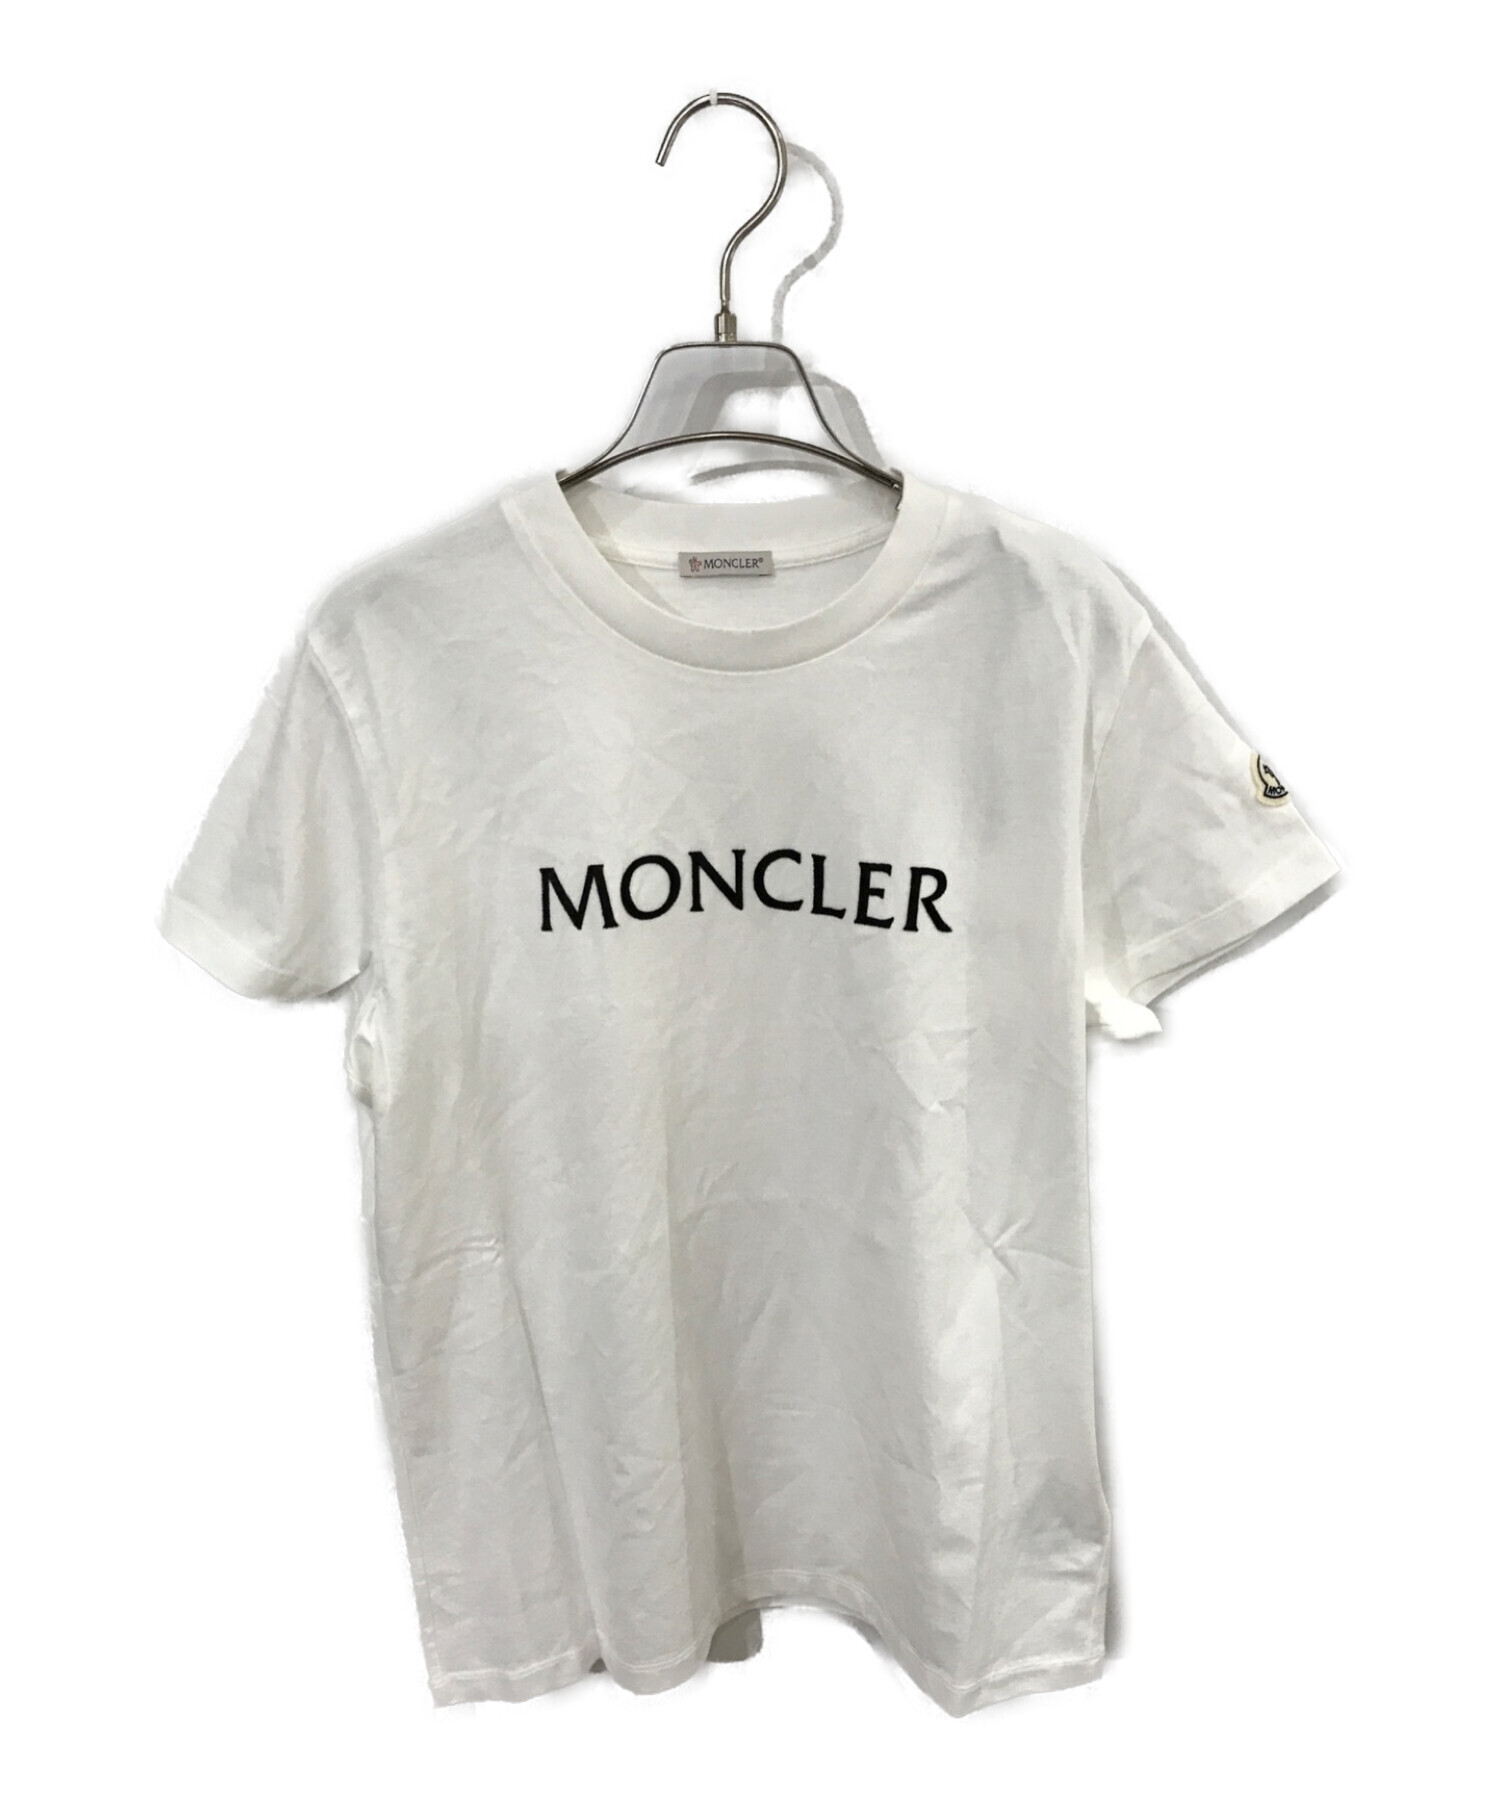 新品未使用品ですモンクレール Tシャツ 新品未使用 ホワイト M